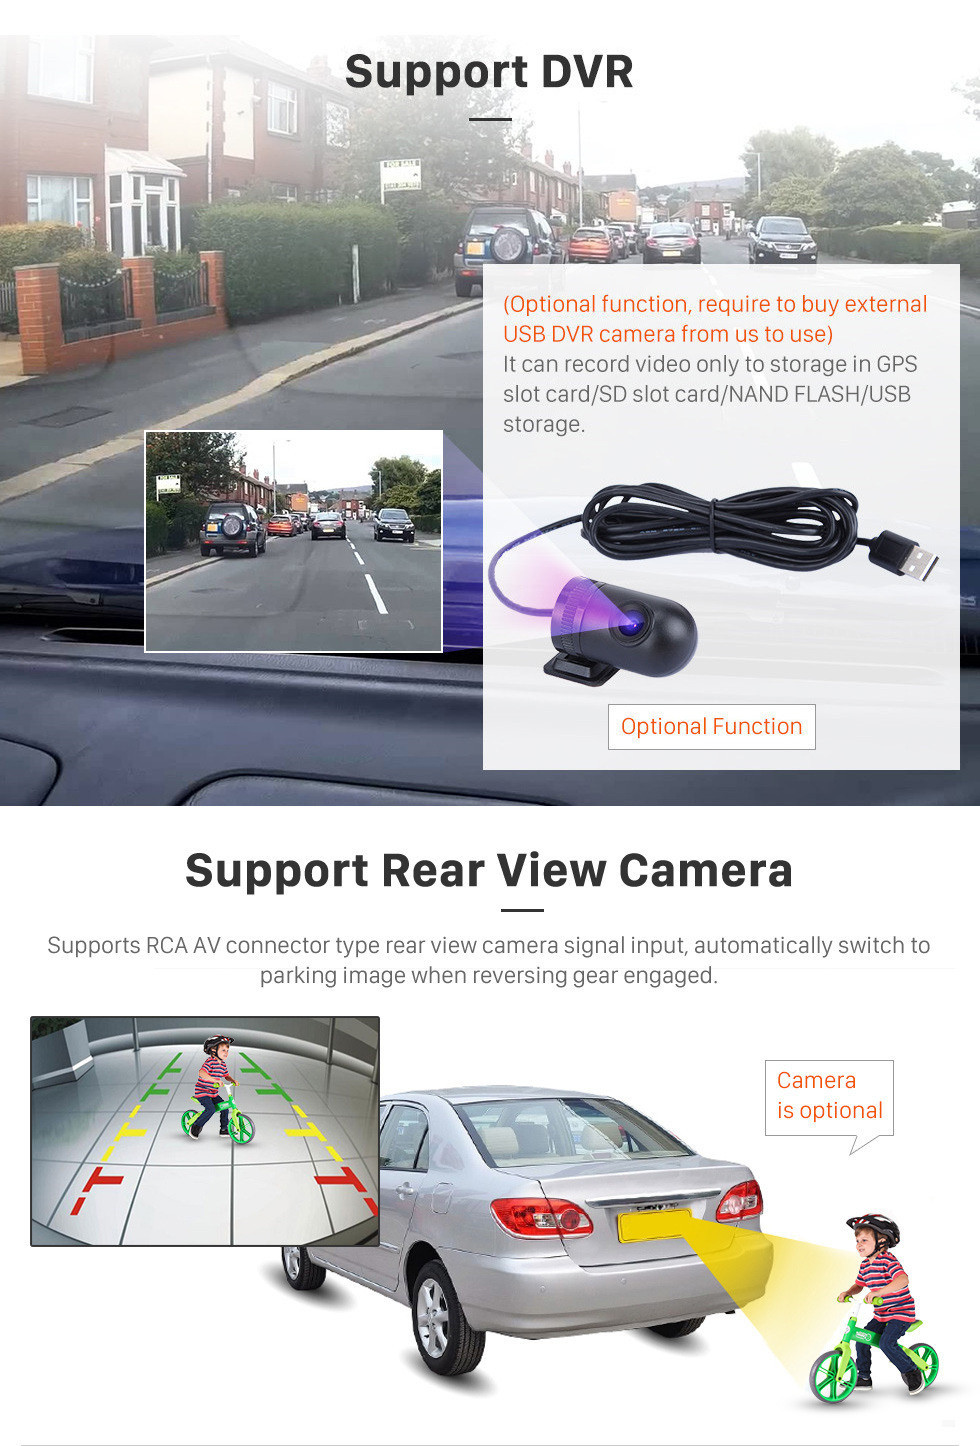 Seicane 10,1-дюймовый Android 11.0 радио для 2014-2016 Honda XRV с HD сенсорным экраном GPS Nav Carplay Bluetooth FM поддержка DVR TPMS Управление рулевого колеса 4G WIFI SD